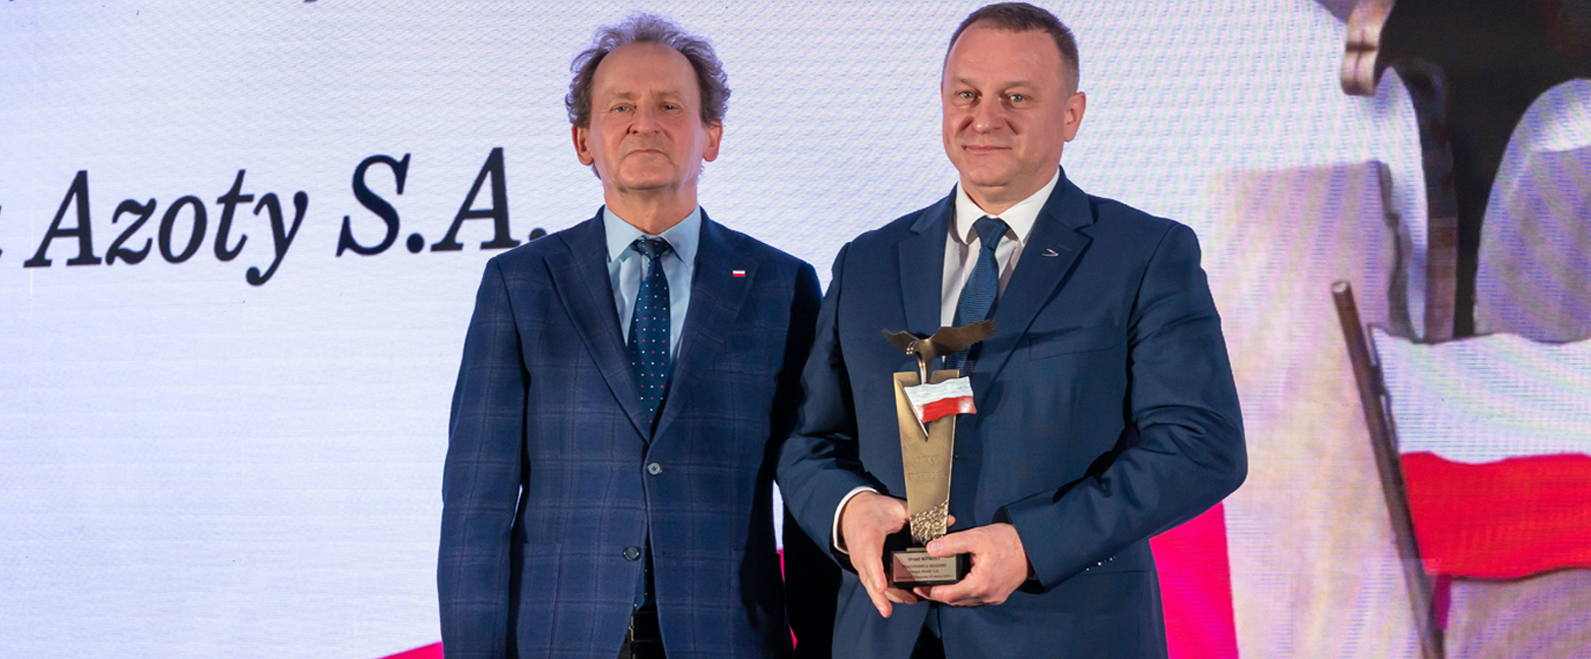 Grupa Azoty S.A. uhonorowana nagrodą Pracodawca Regionu na Gali Orłów Wprost